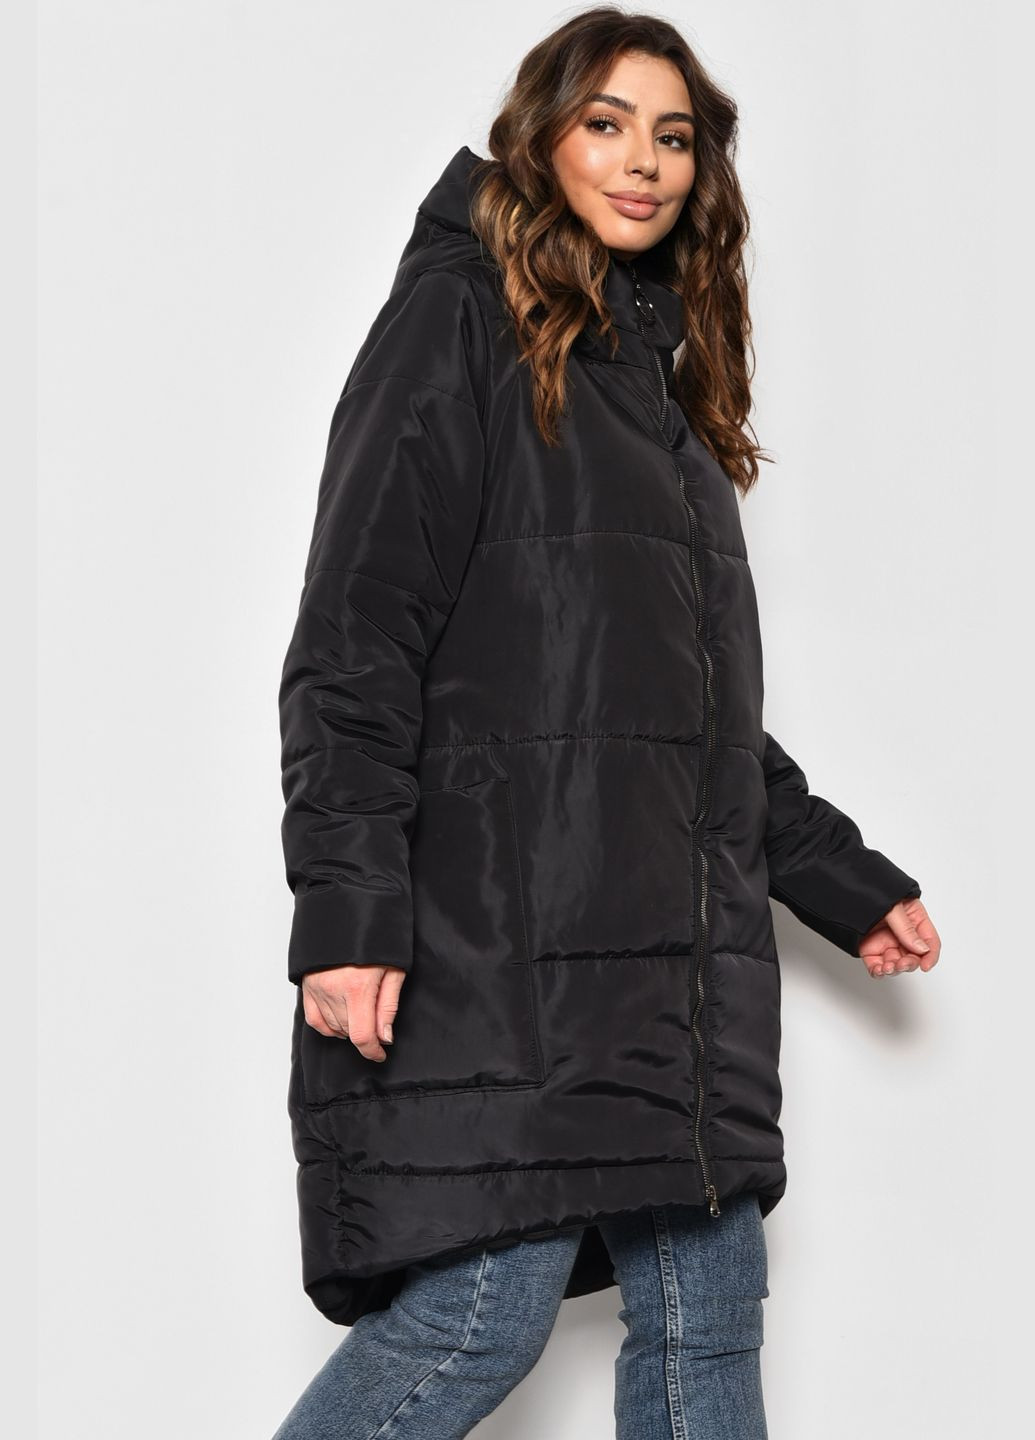 Чорна демісезонна куртка жіноча єврозима чорного кольору Let's Shop